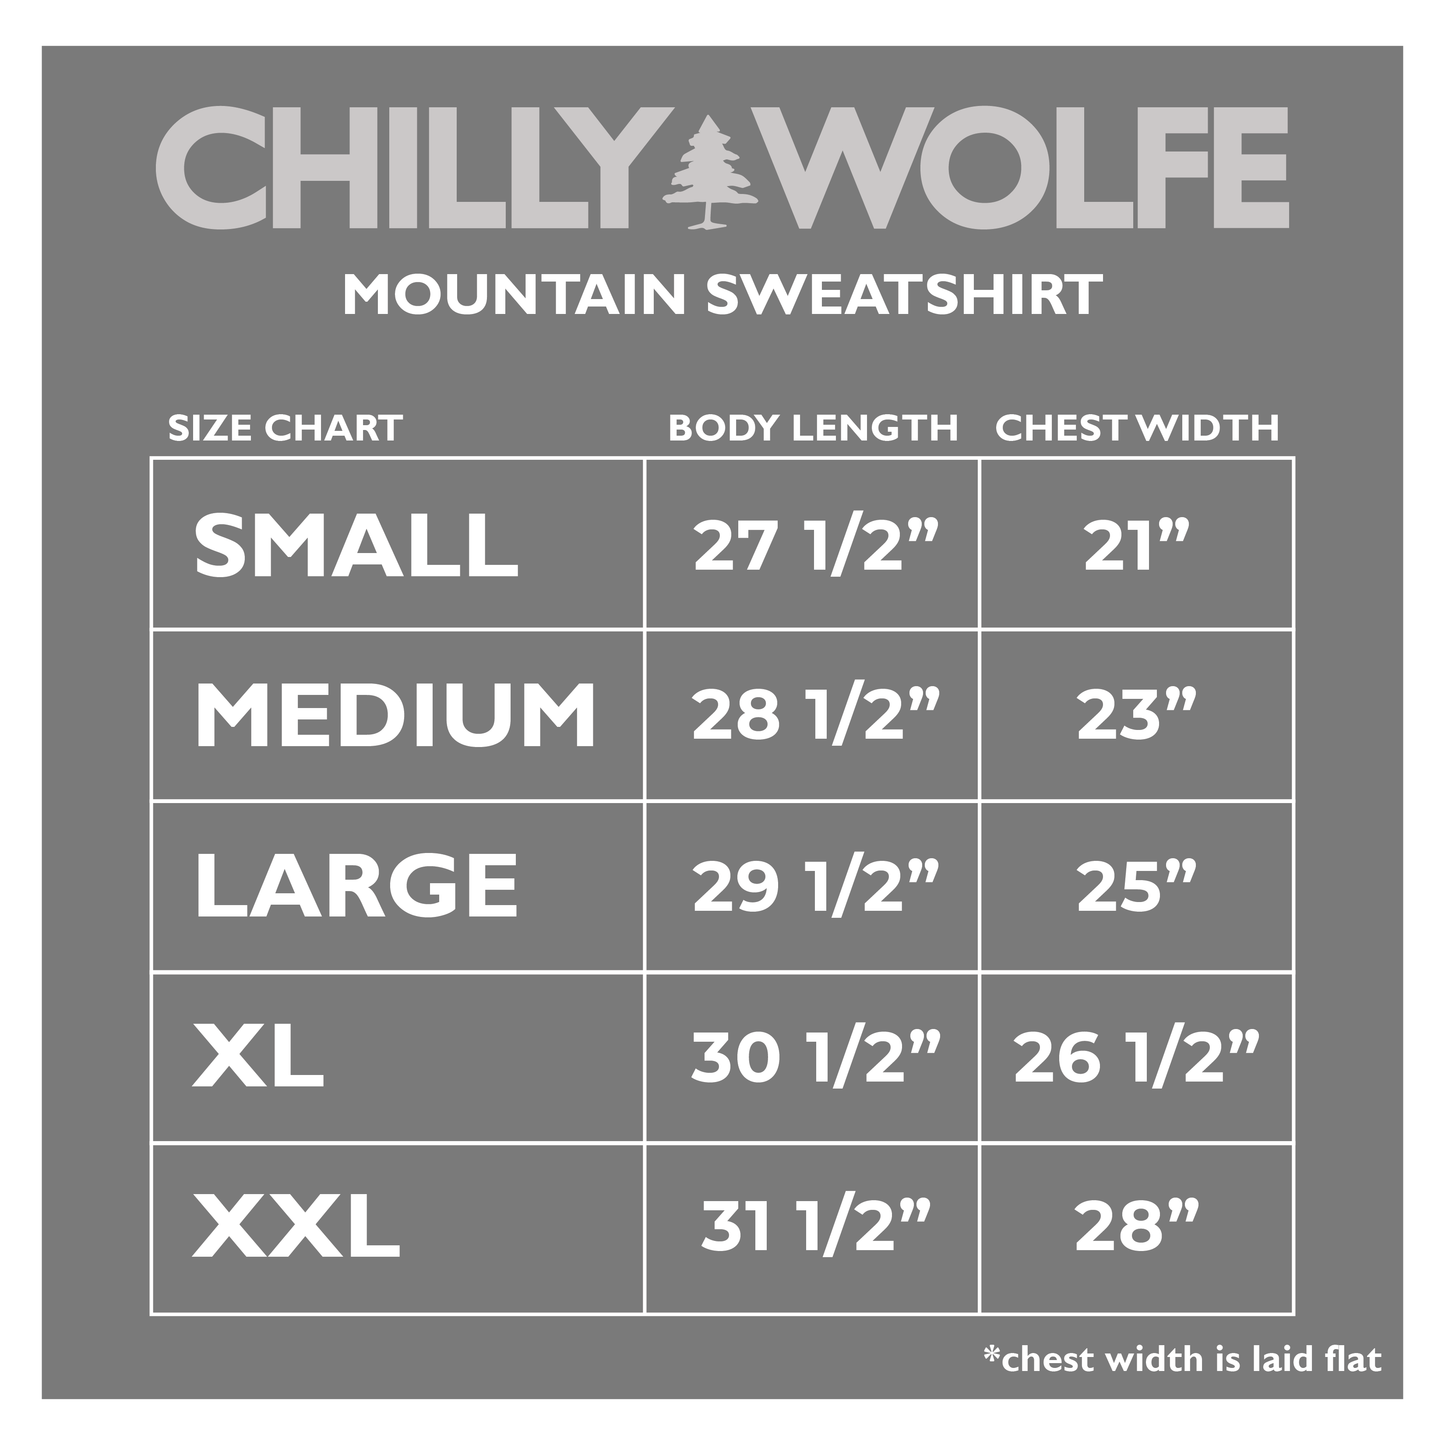 Mountain sweatshirt